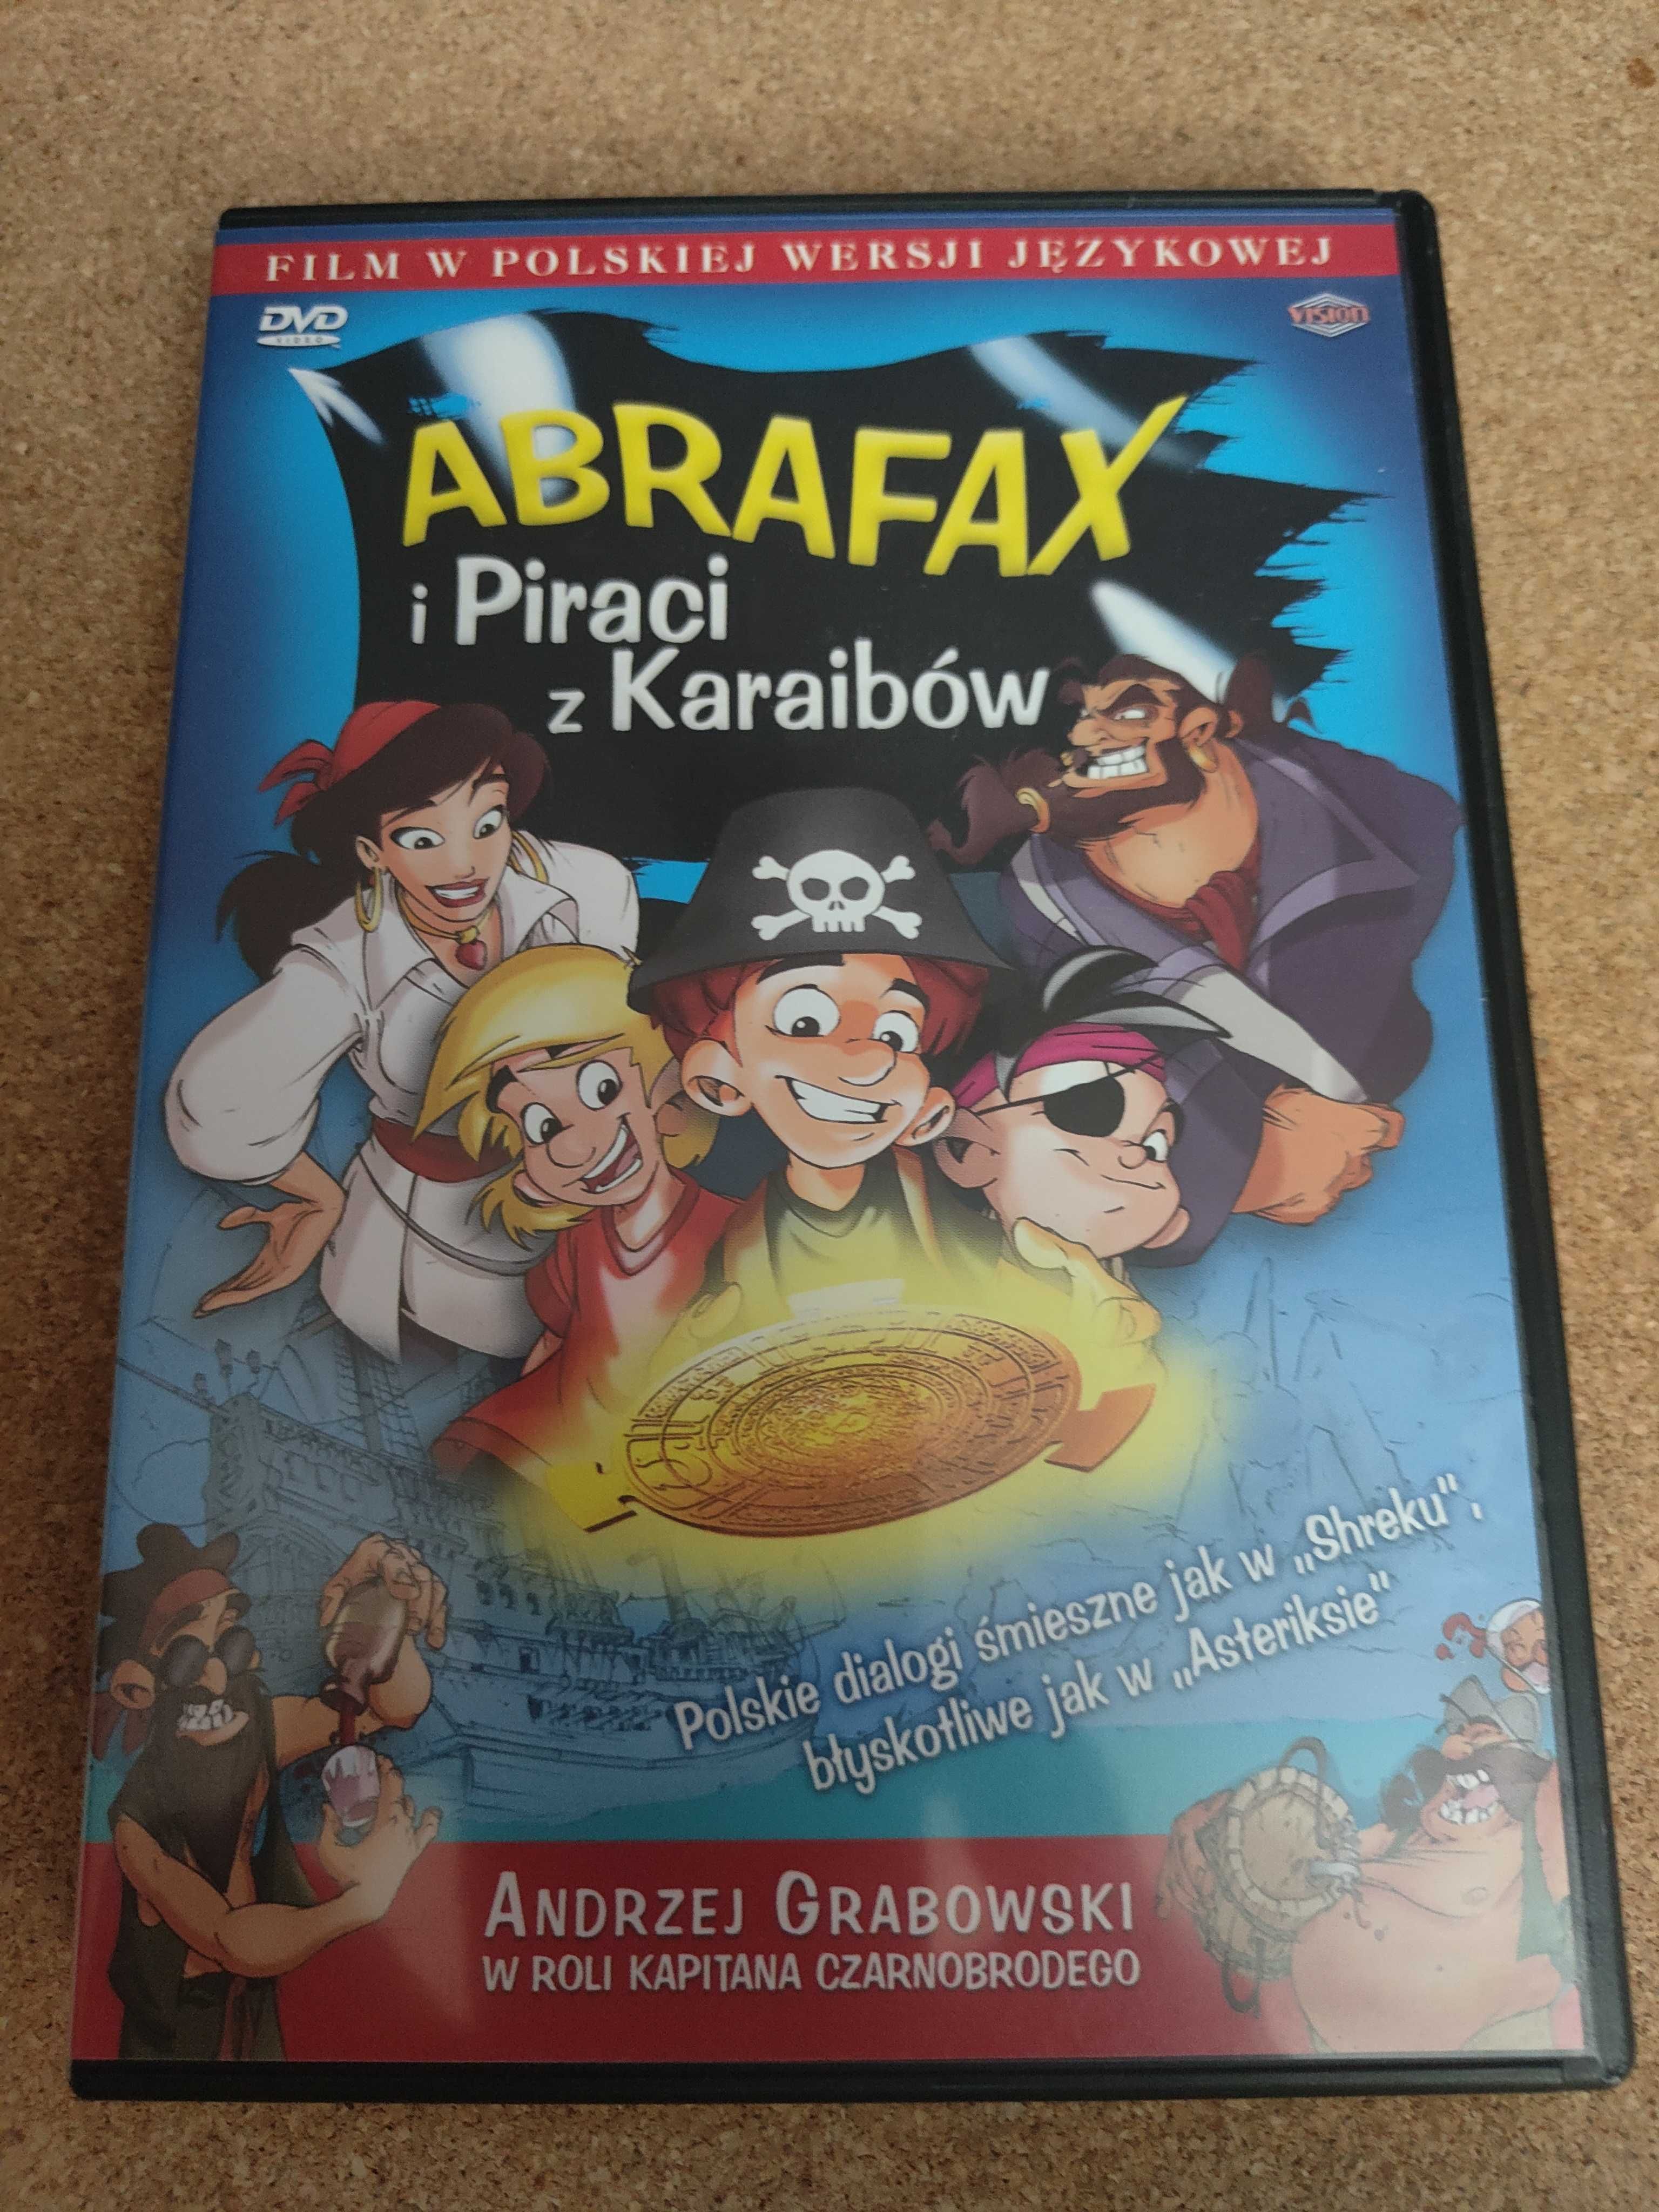 bajka DVD "Abrafax i Piraci z Karaibów"